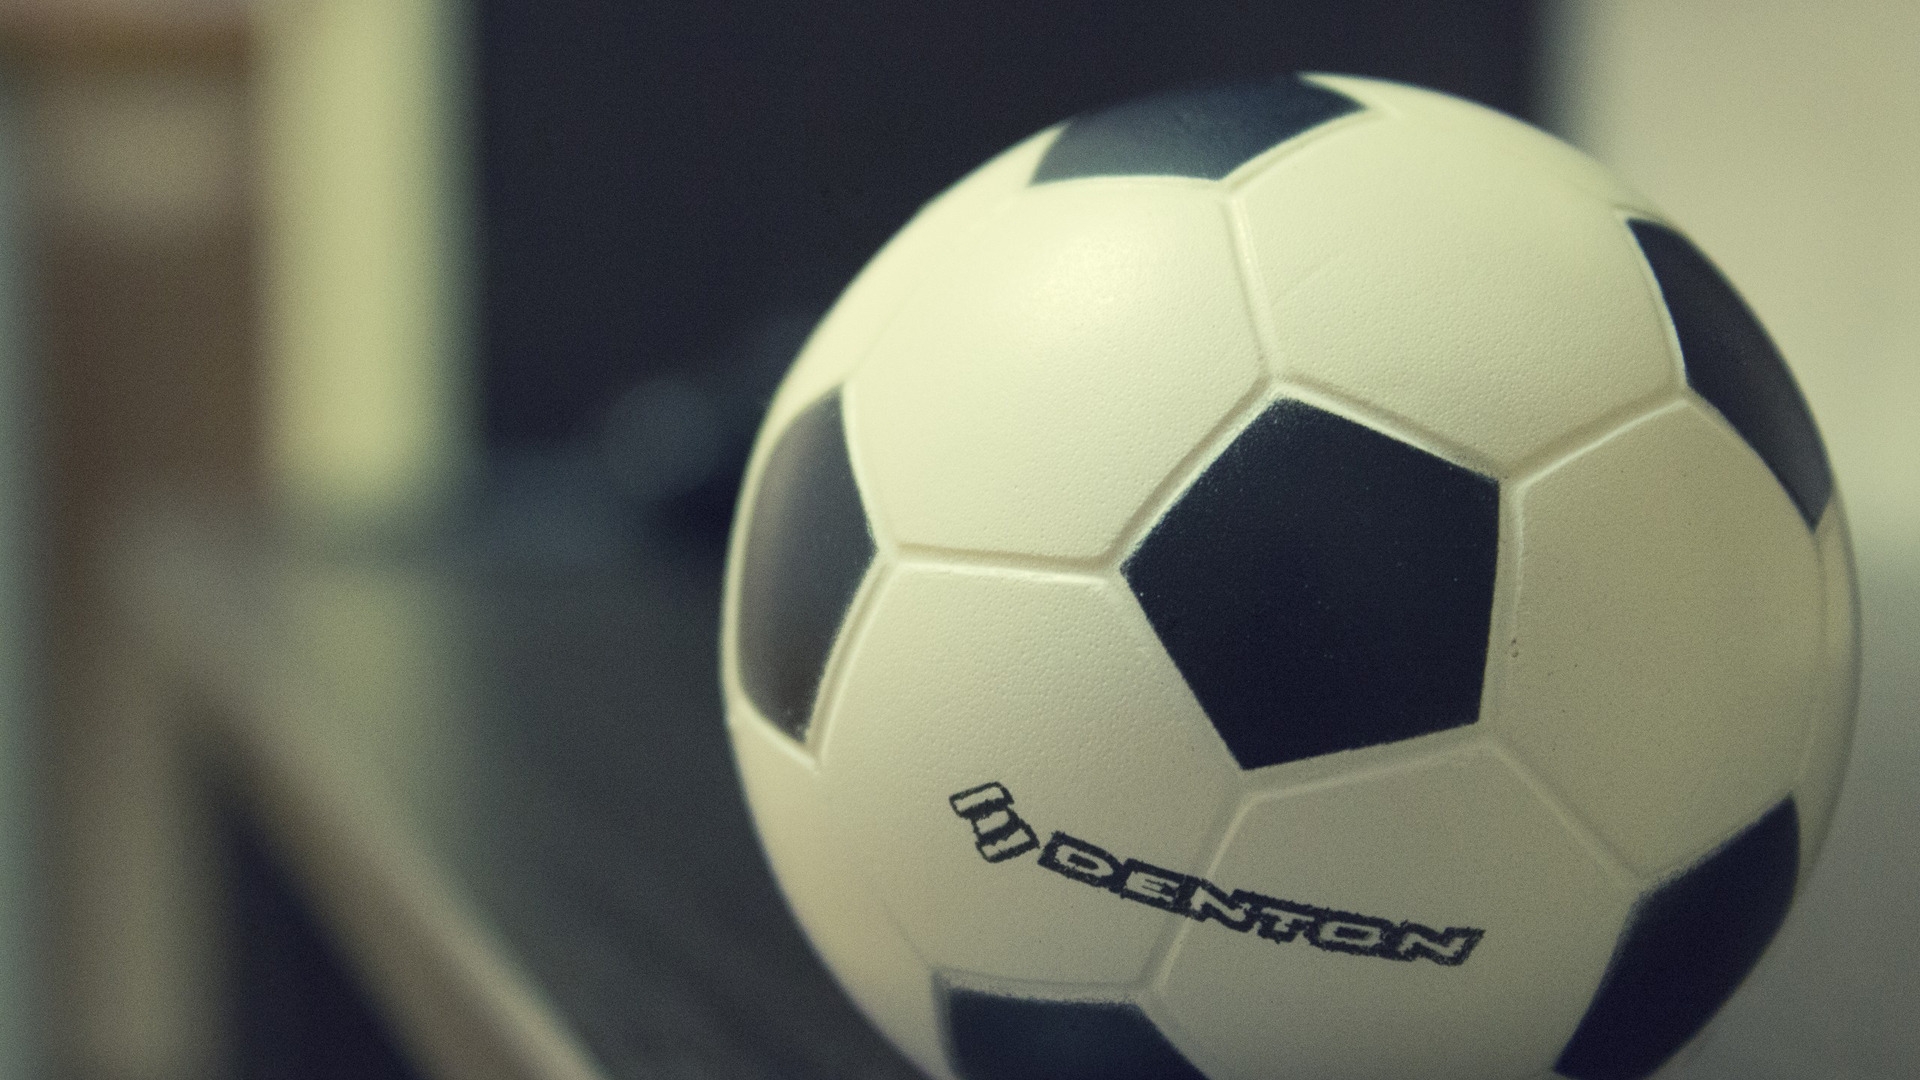 Denton Soccer Ball for 1920 x 1080 HDTV 1080p resolution